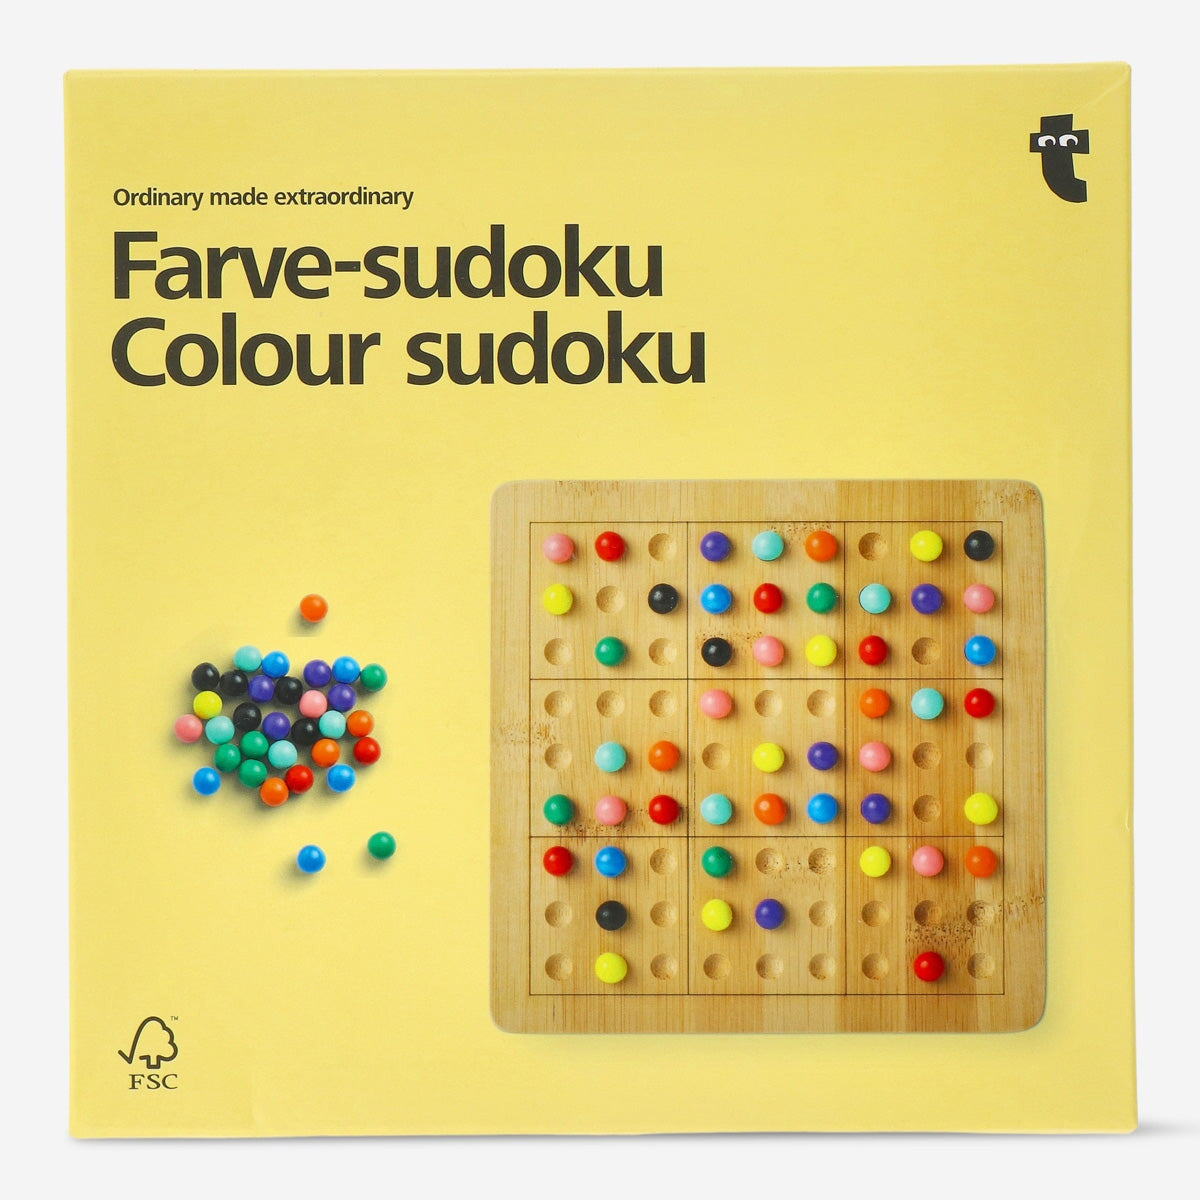 Sudoku jogo infantil comida rápida para viagem